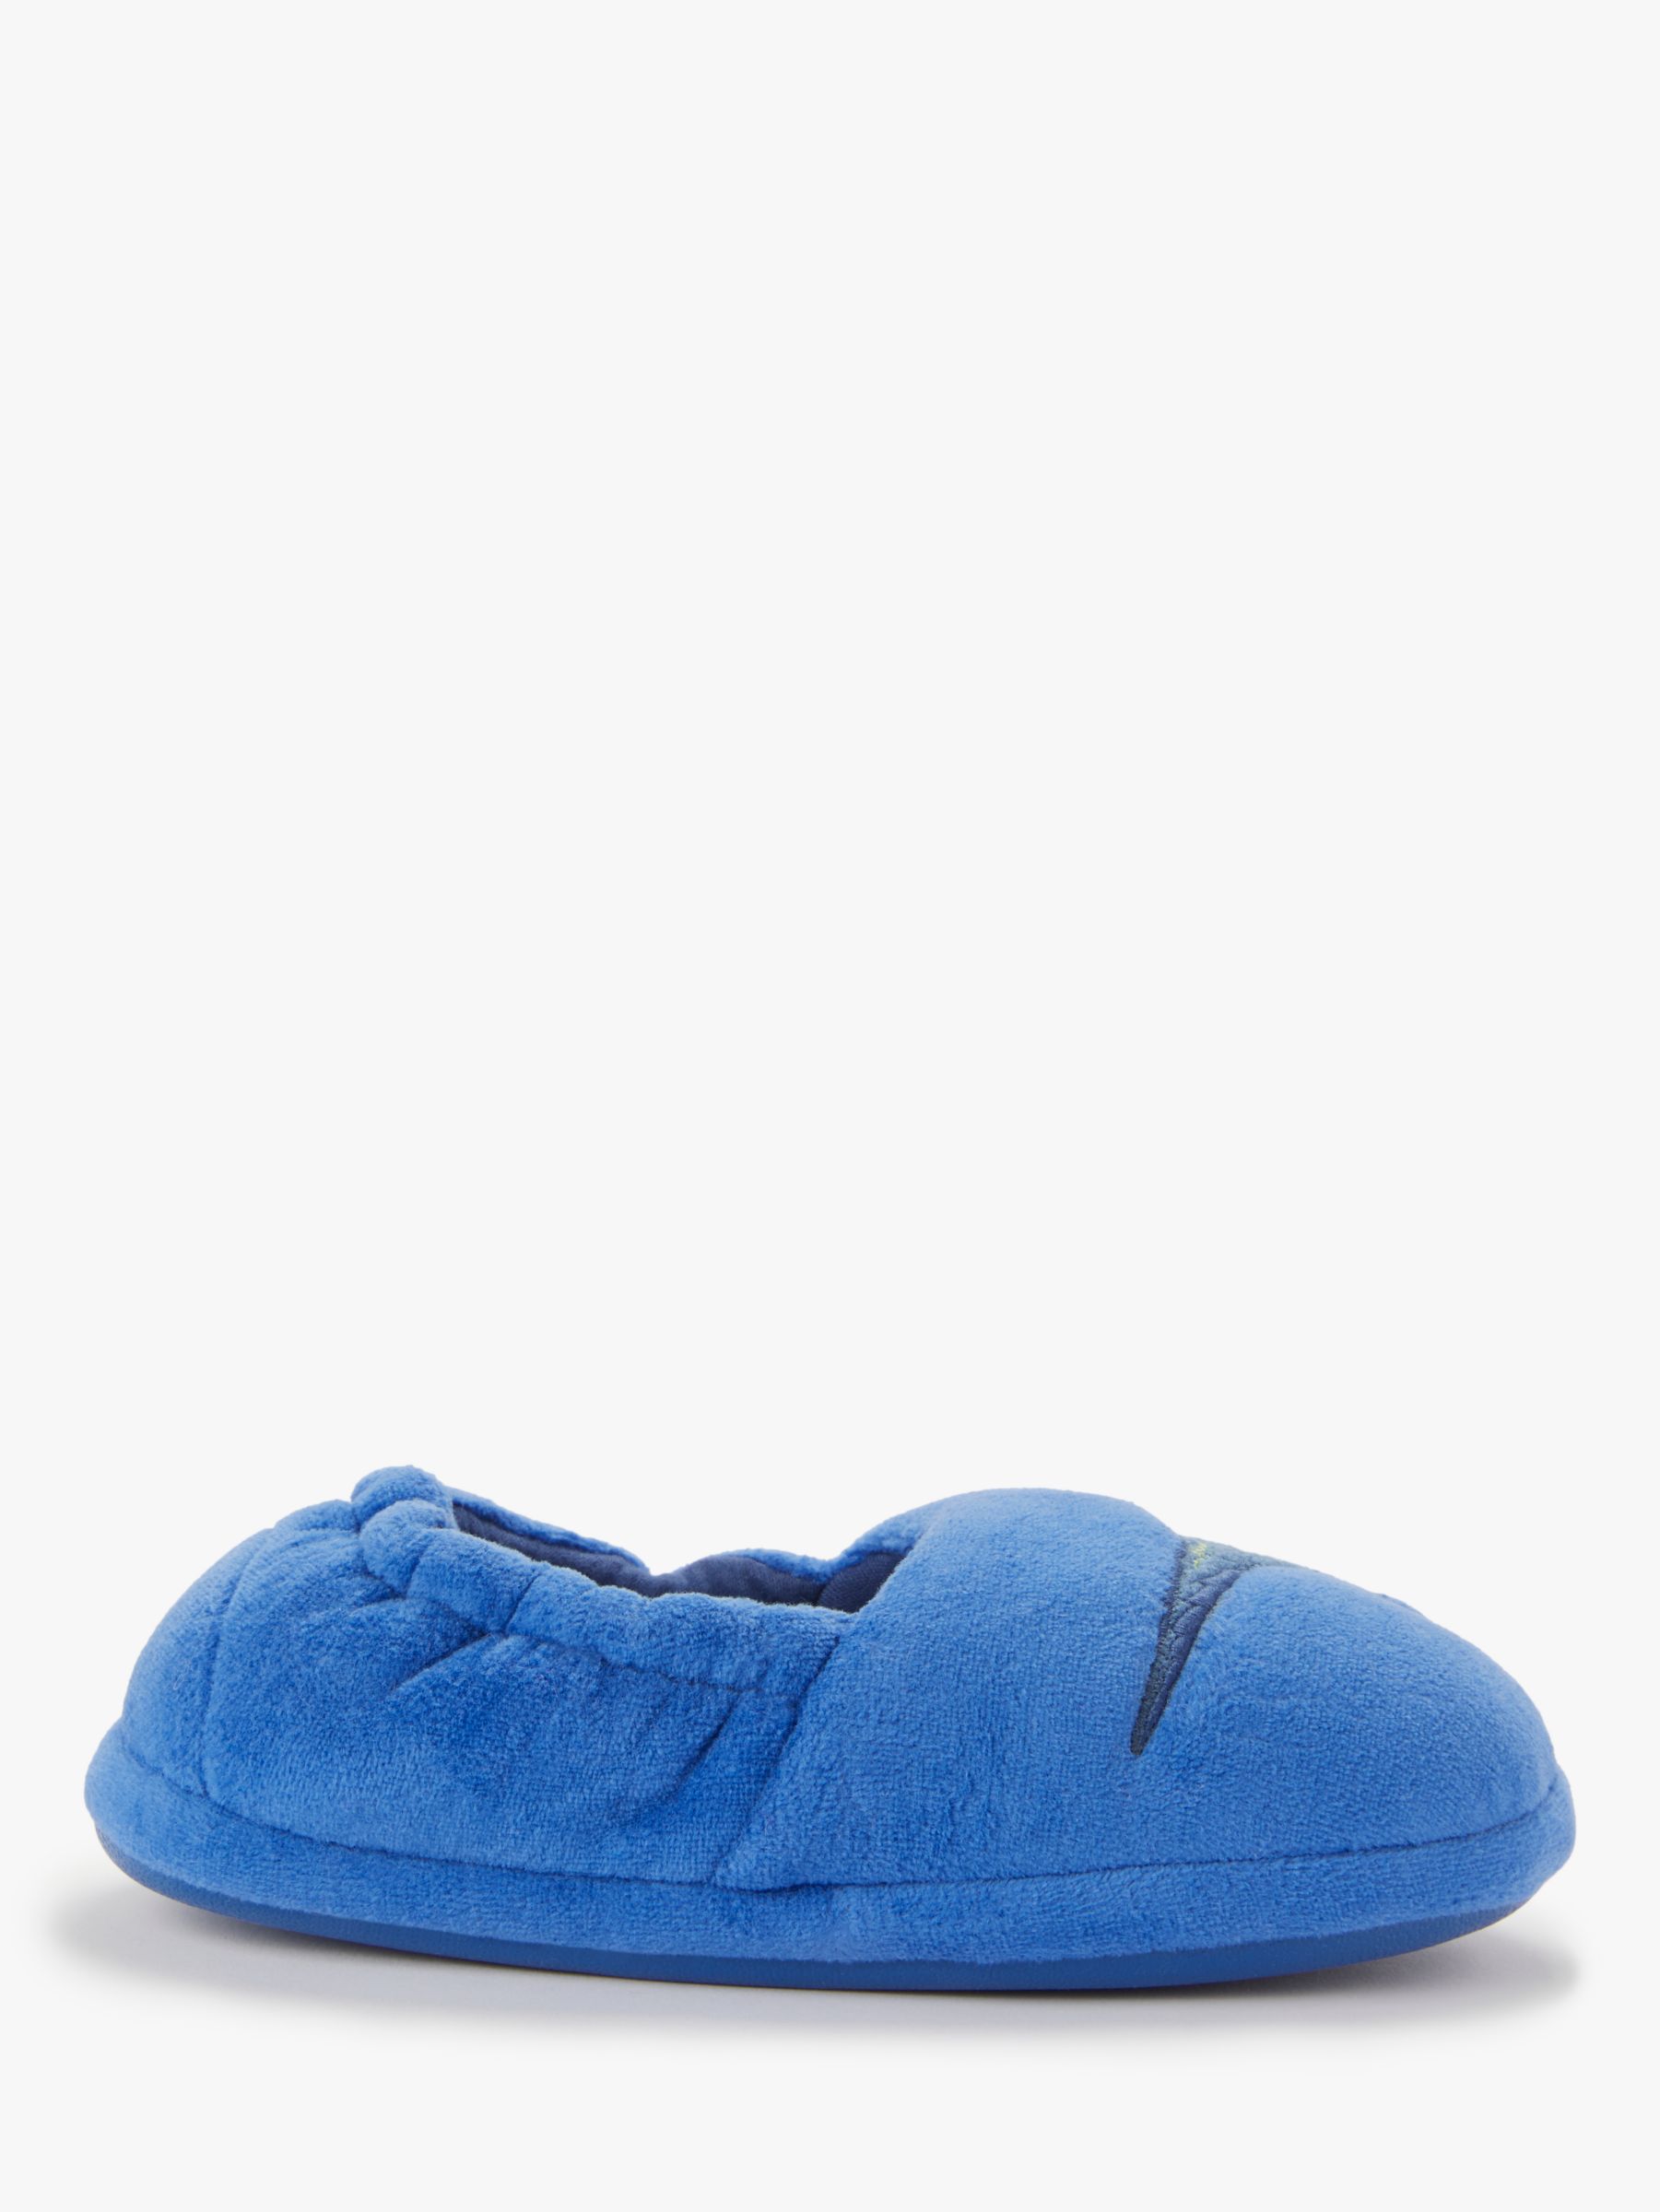 blue dinosaur slippers